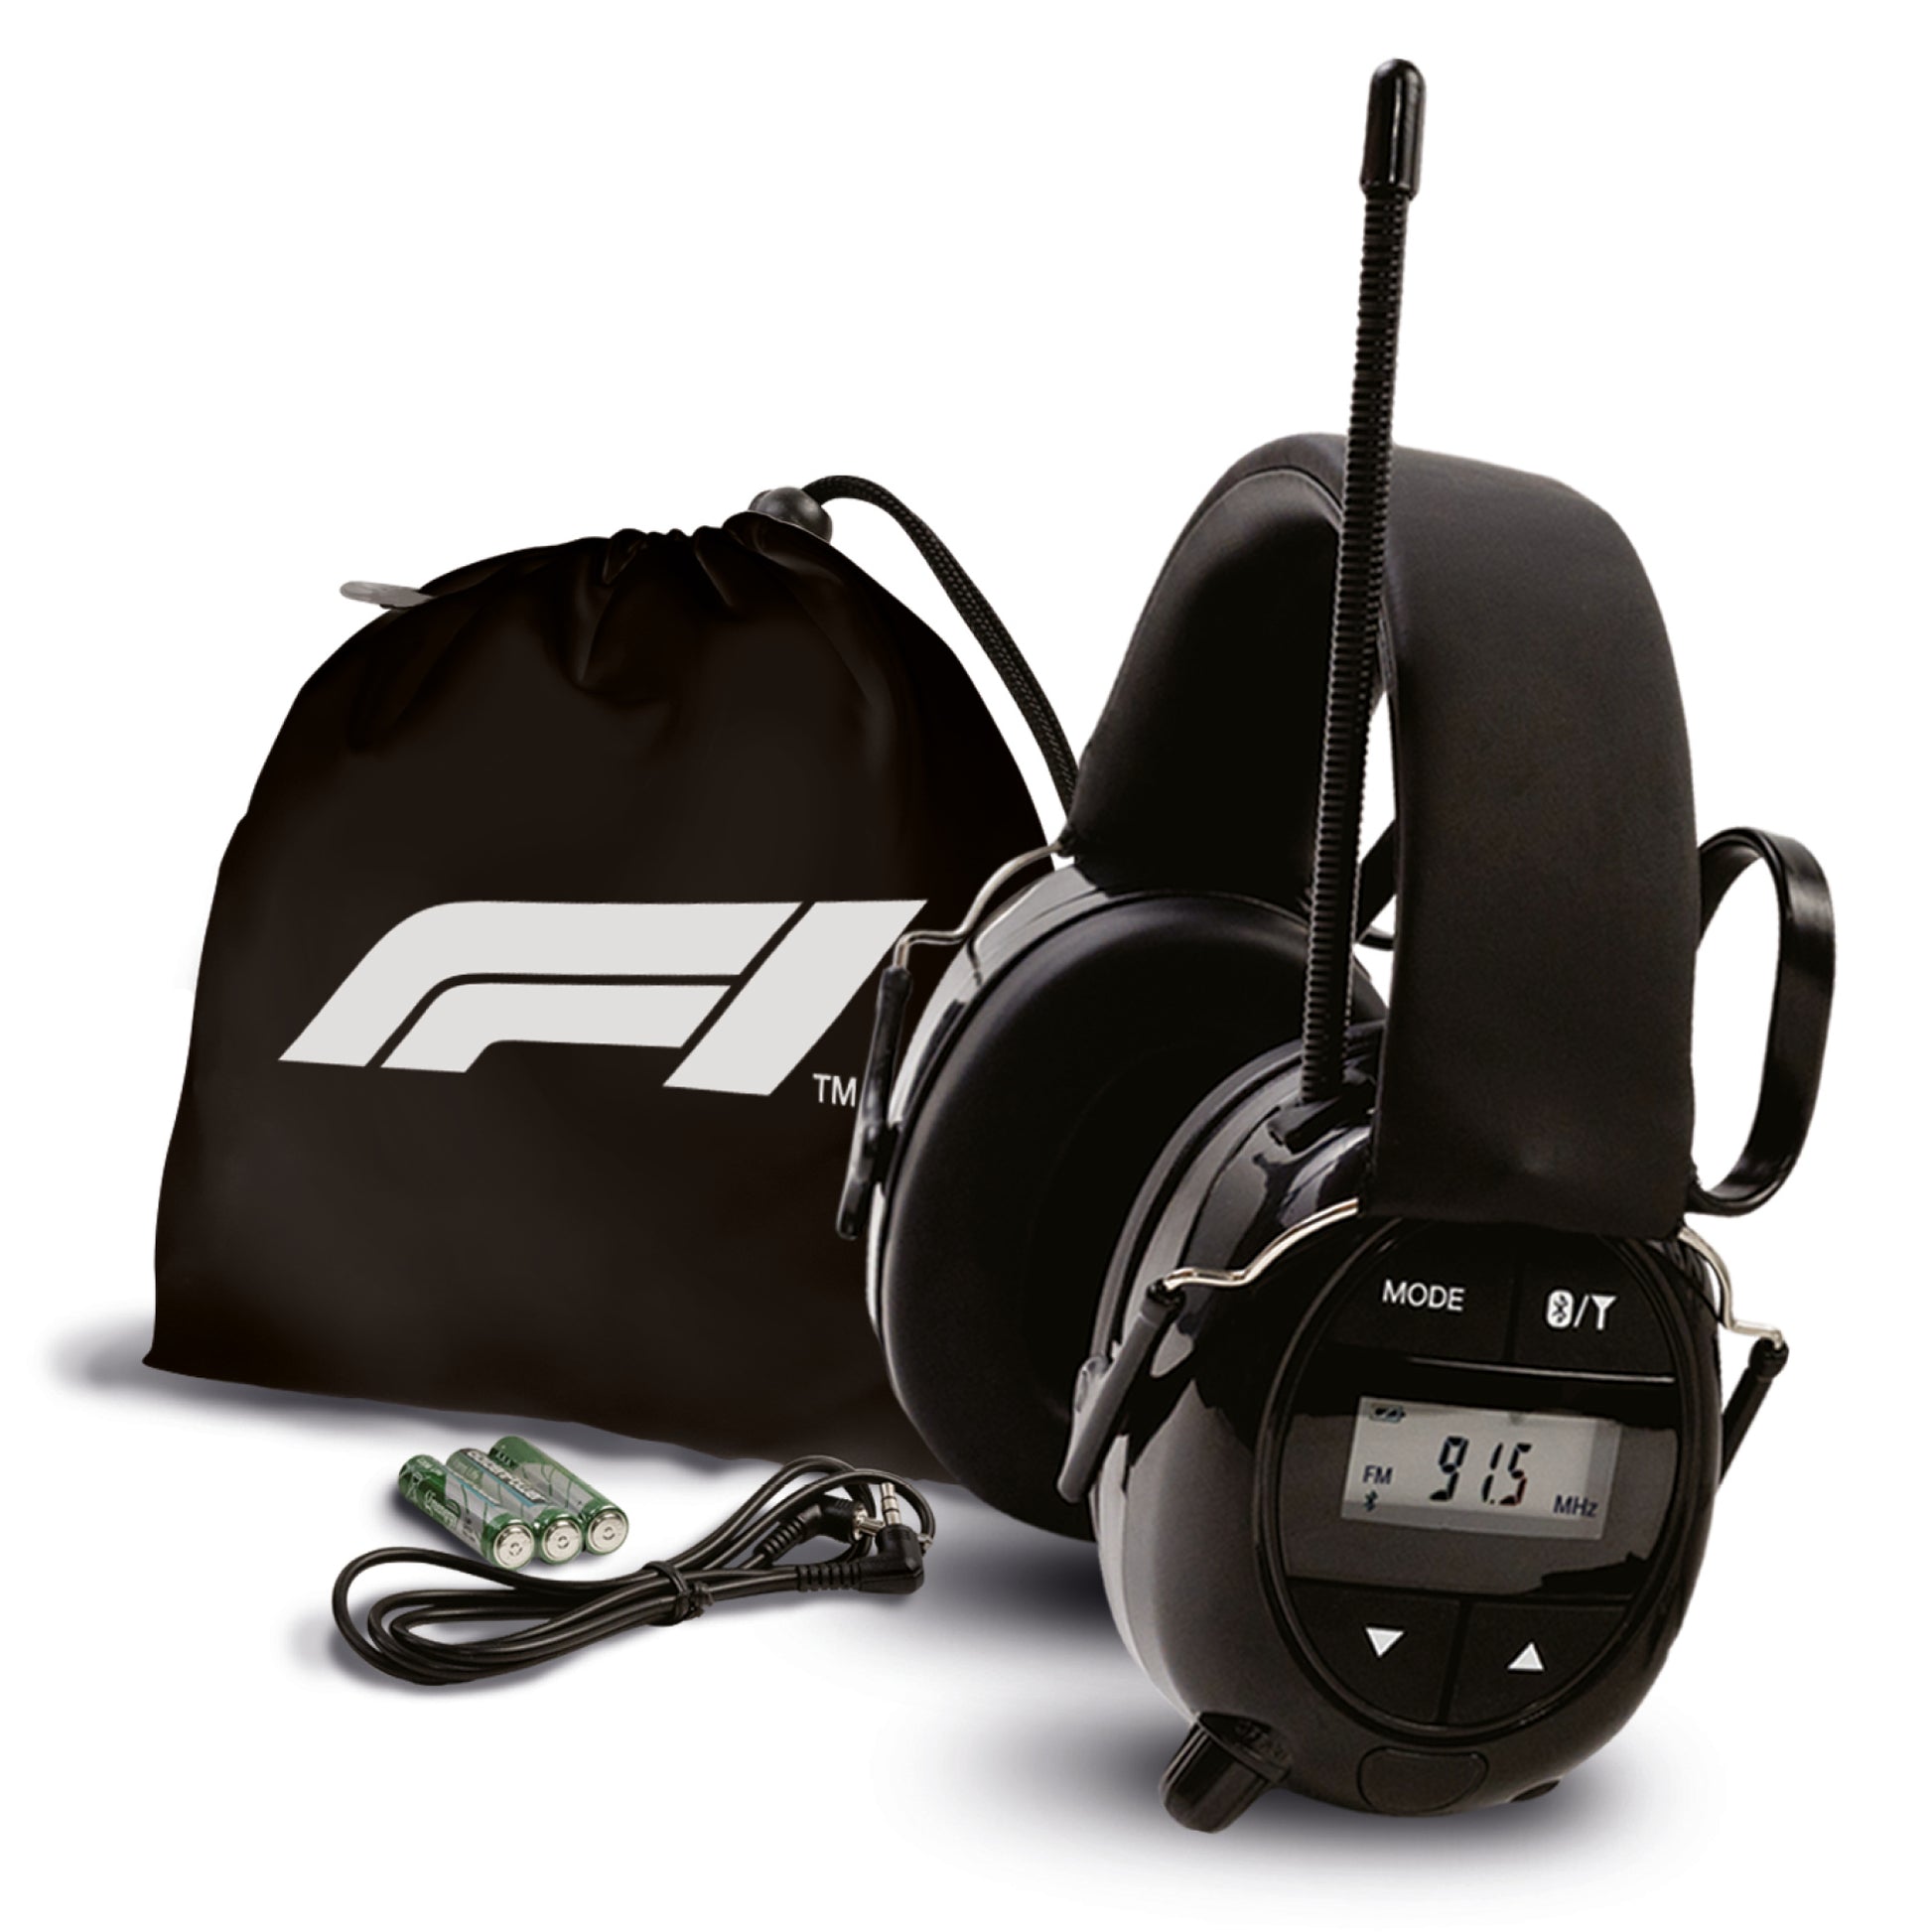 Tot stand brengen Bloesem pond Formula 1 Radio and Bluetooth Oorkap voor gehoor bescherming en muziek  tijdens uw favoriete races – Alpine Hearing Protection